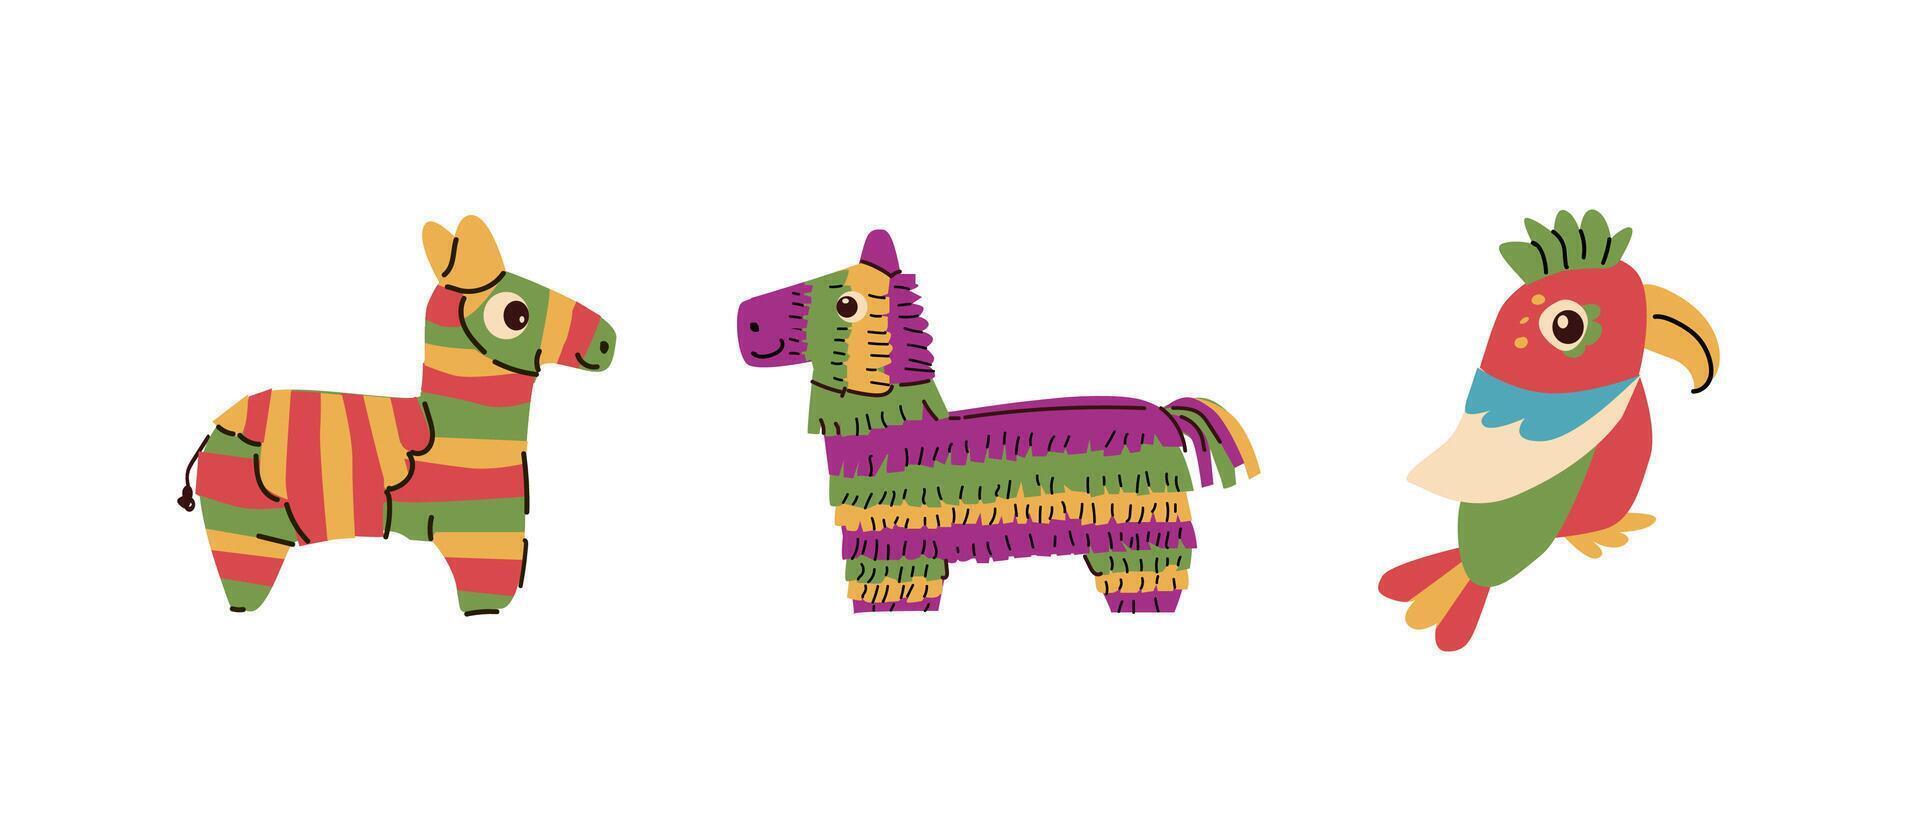 Mexicaans paard pinata reeks en papegaai voor partij in vlak stijl. vector illustratie kan gebruikt voor verjaardag pinata partij kaart, cinco de mayo achtergrond, groet kaarten, spandoeken, etiketten.